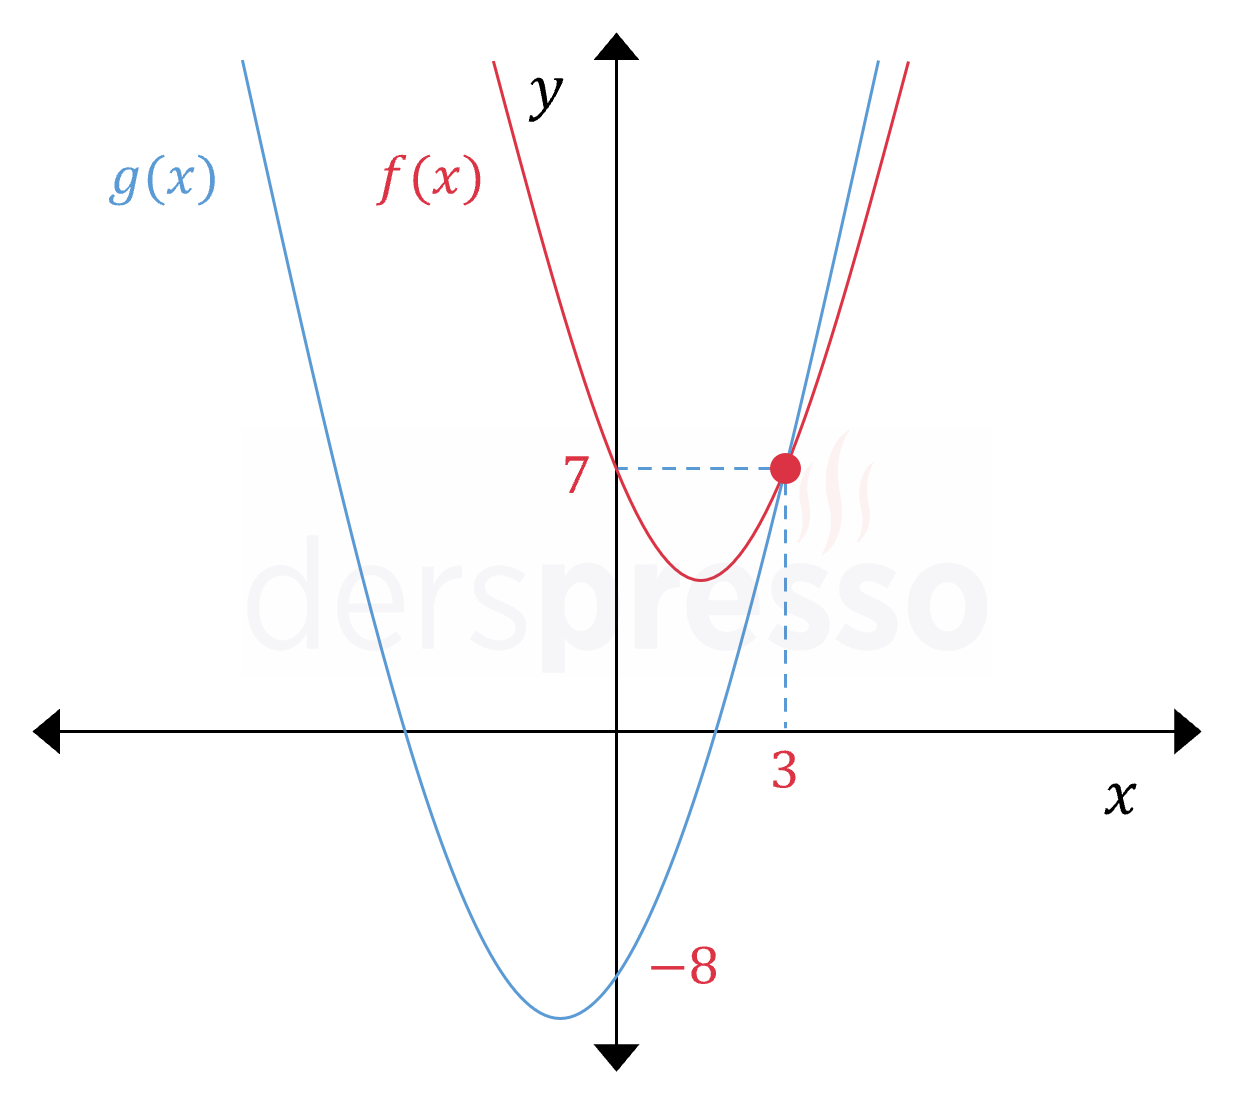 İki parabolün birbirine göre durumu (örnek)